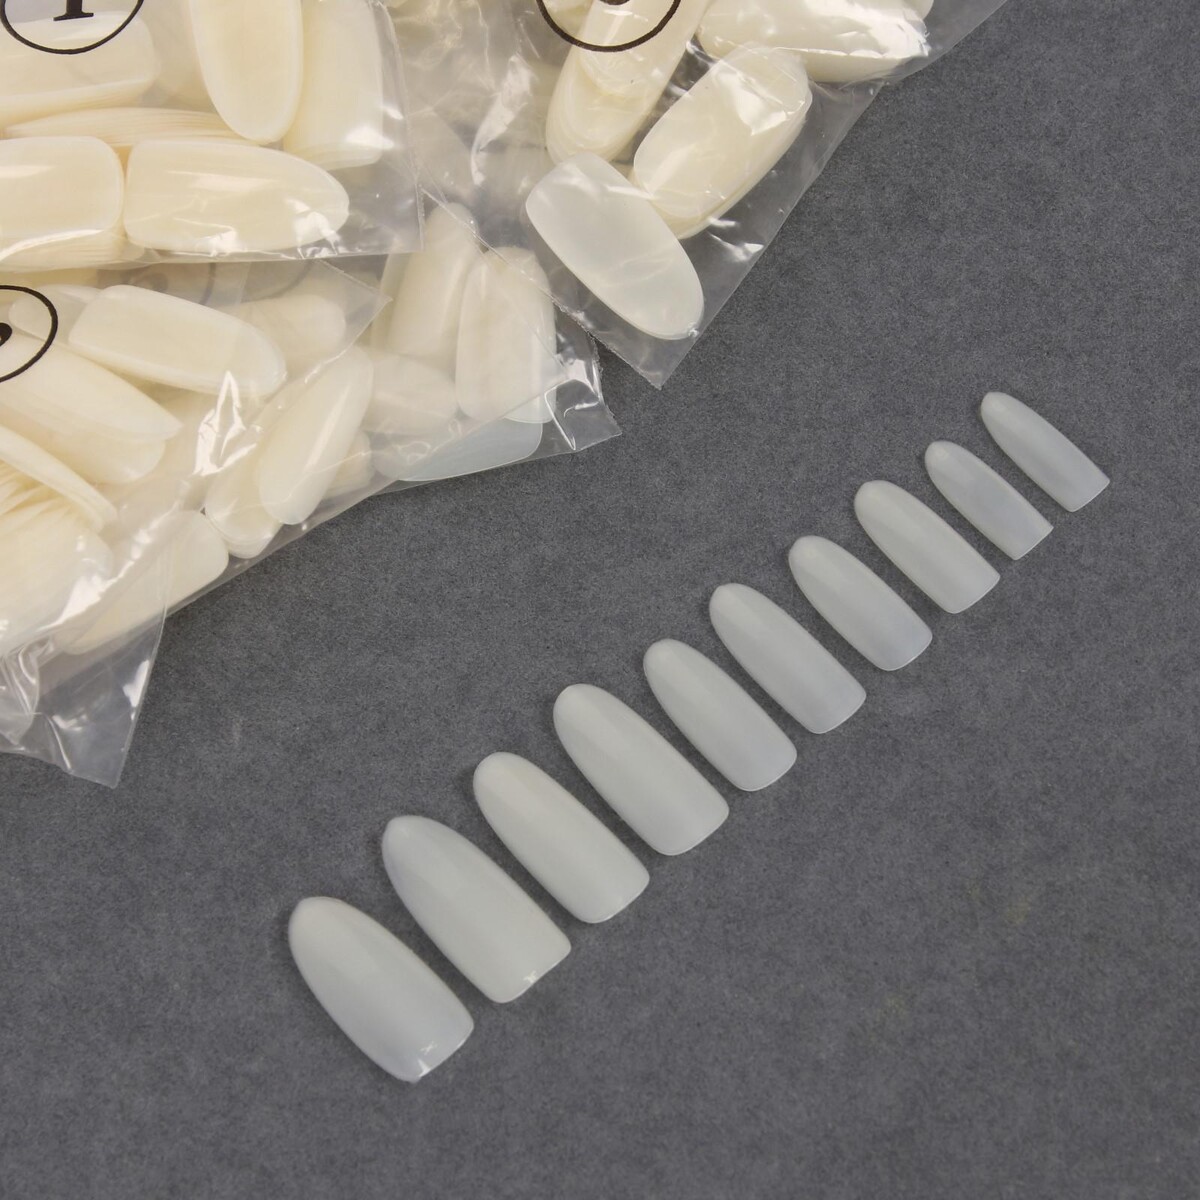 Типсы для наращивания ногтей, 500 шт, форма овал, в пакете, 10 размеров, цвет молочный типсы для наращивания ногтей 500 шт форма овал в пакете 10 размеров молочный